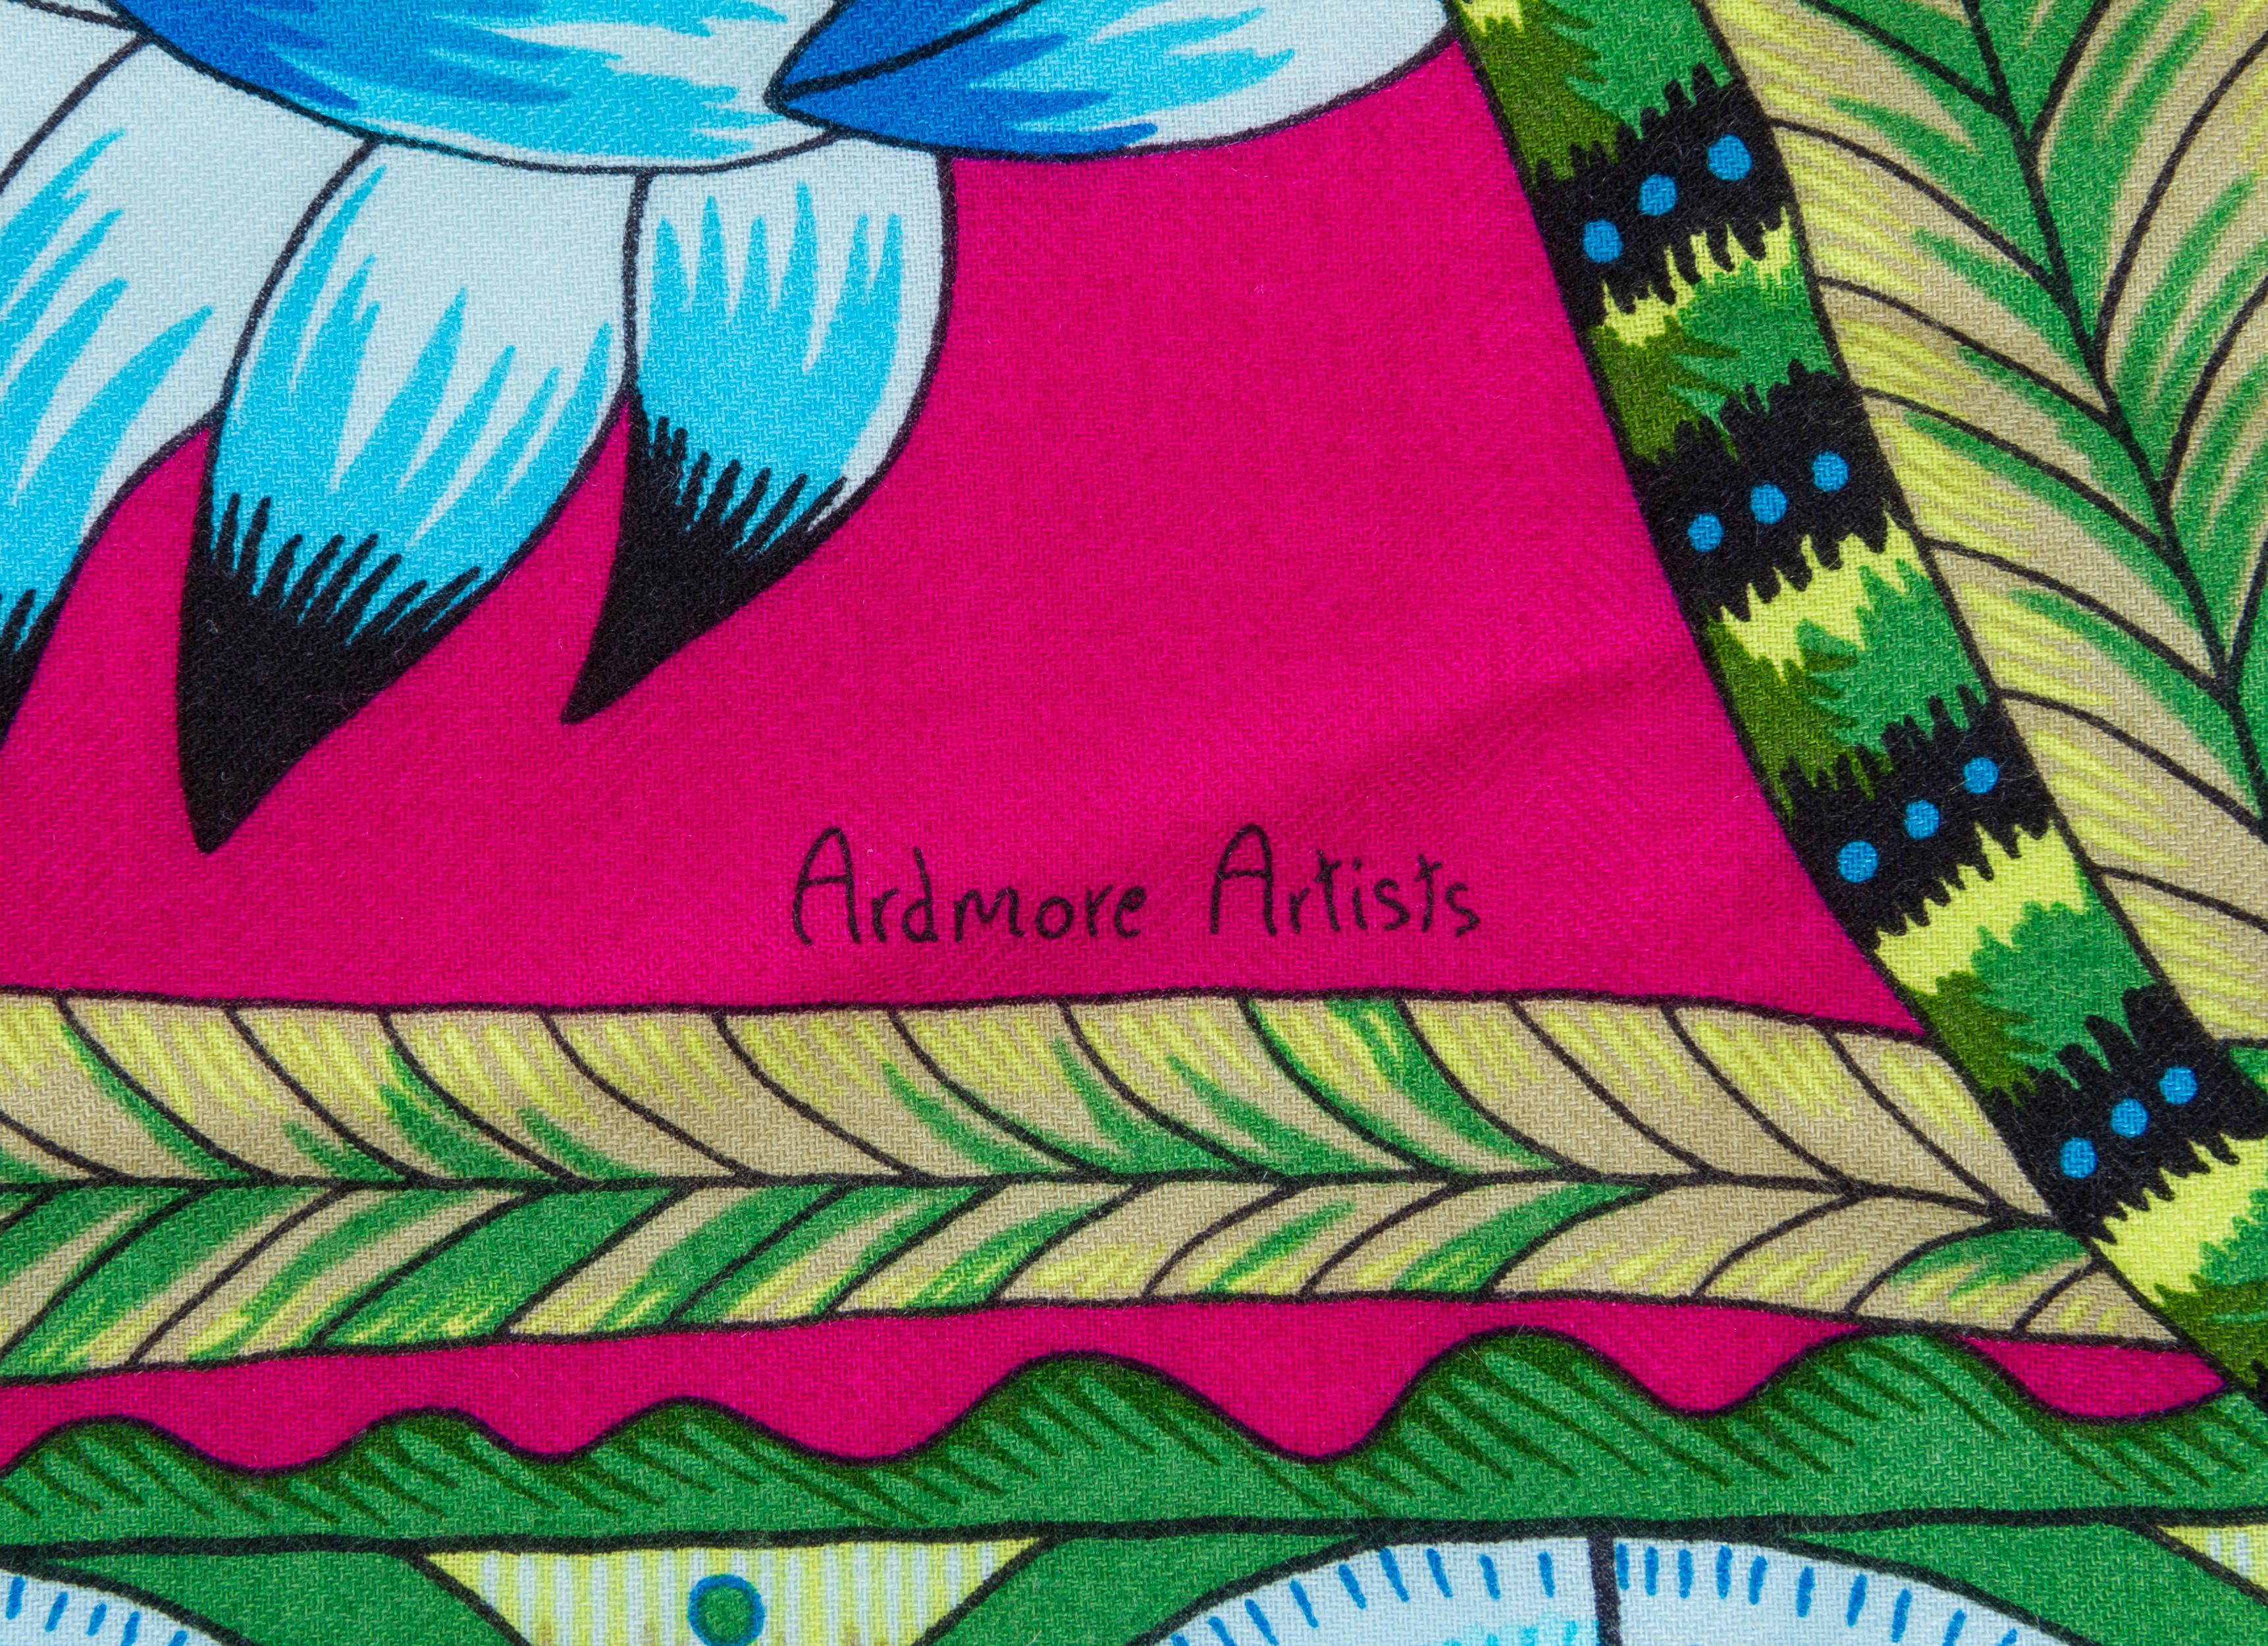 Hermes new in box Ardmore Artists designer Savana dance cashmere silk shawl. 54